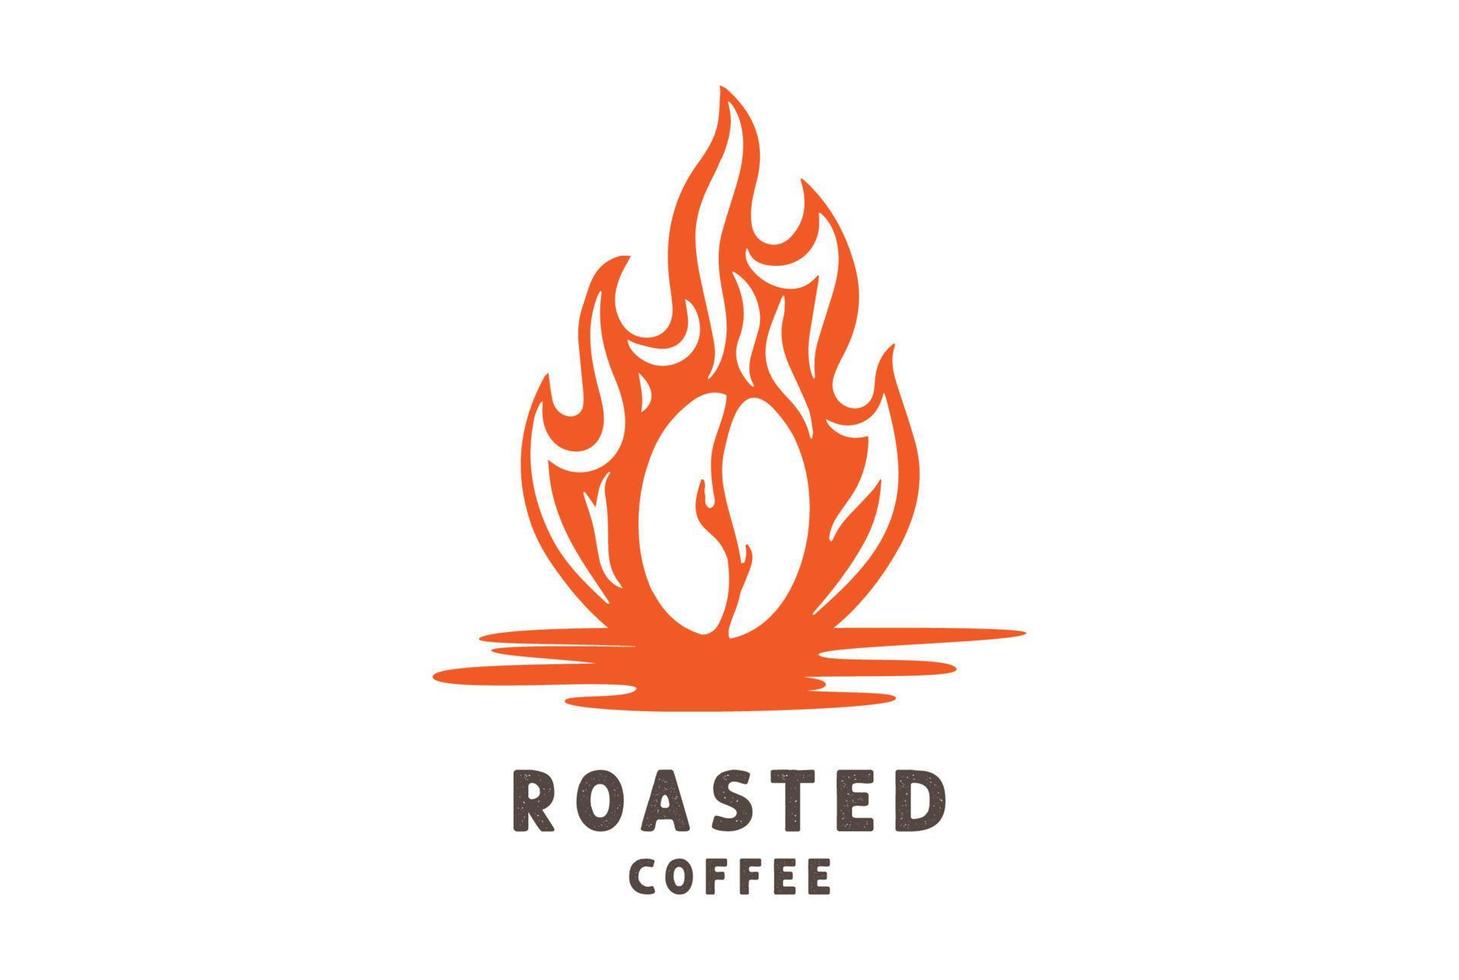 brennendes flammenfeuer mit kaffeebohne für geröstetes caférestaurant oder produktlogodesignvektor vektor